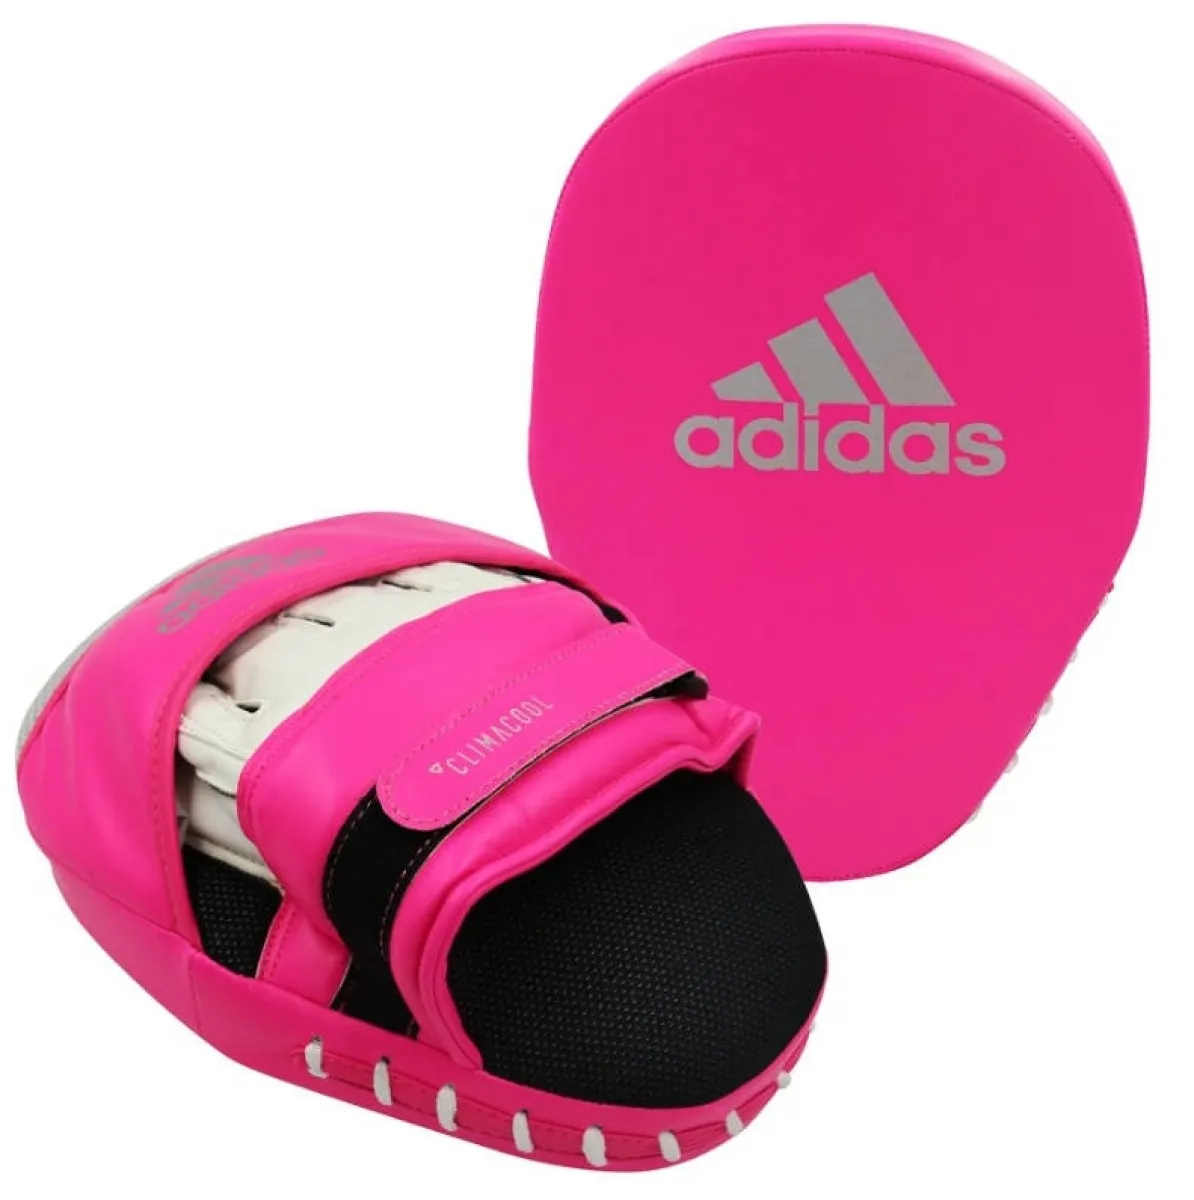 adidas Handpratzen Focus kurz gebogen pink